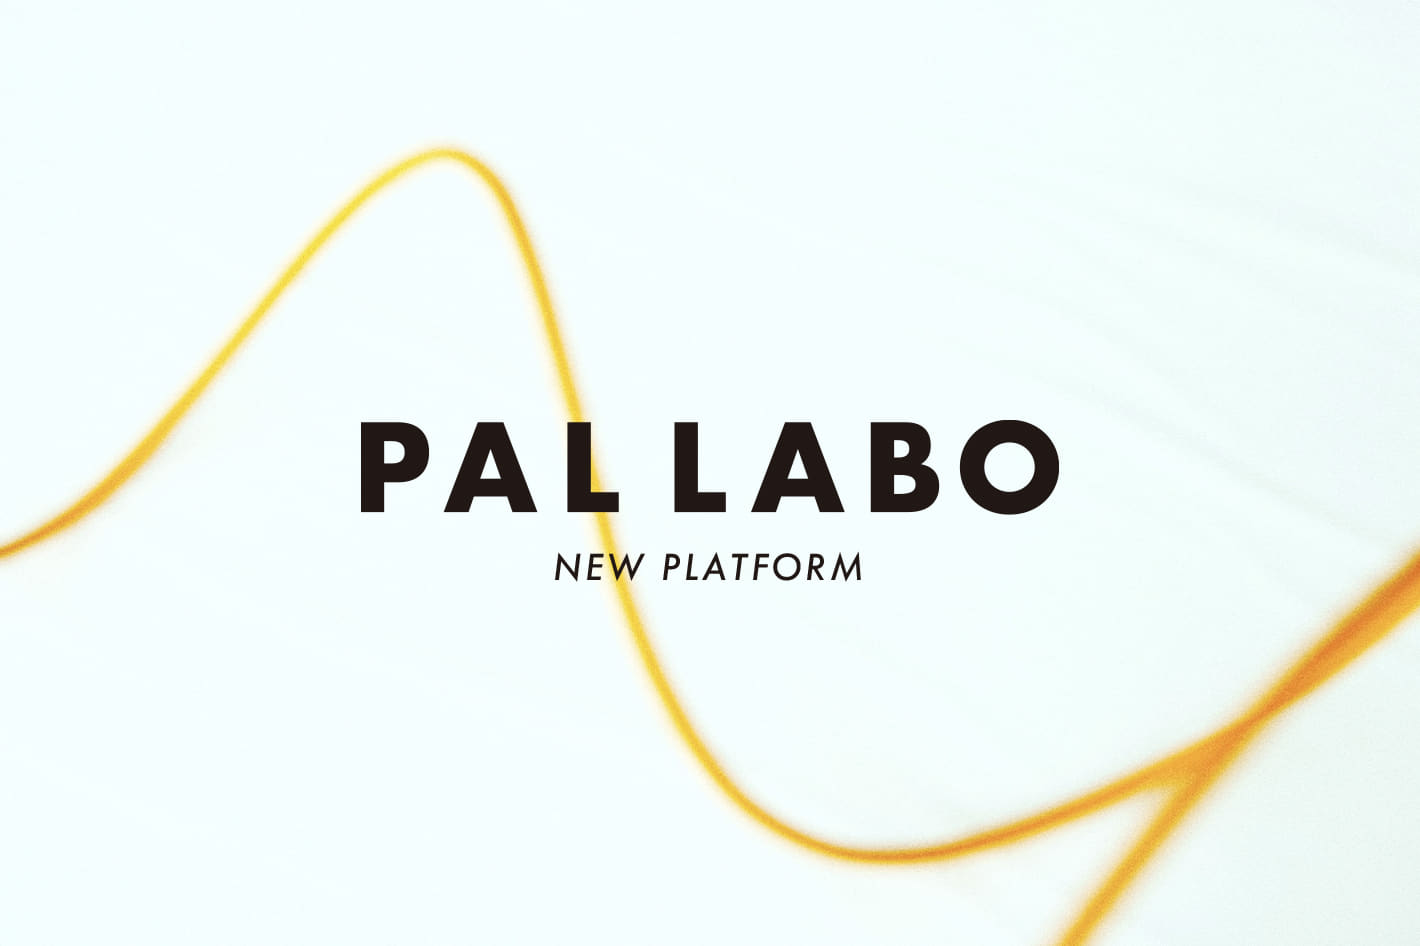 PAL LABO NEW PLATFORM